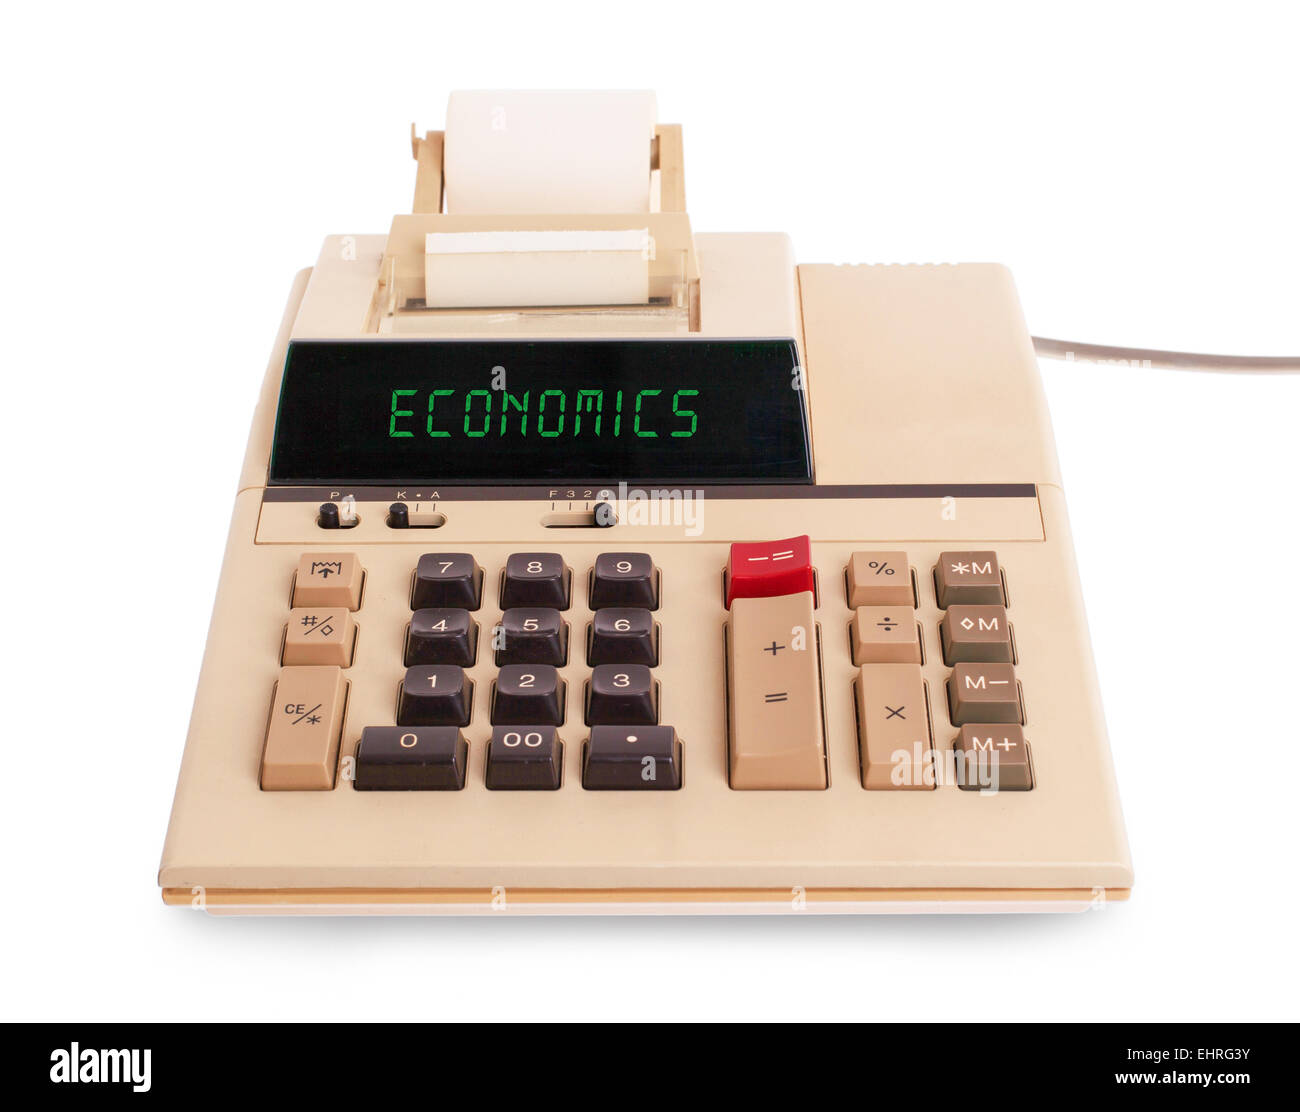 Alte Rechner zeigt einen Text auf dem Display - Wirtschaft Stockfoto